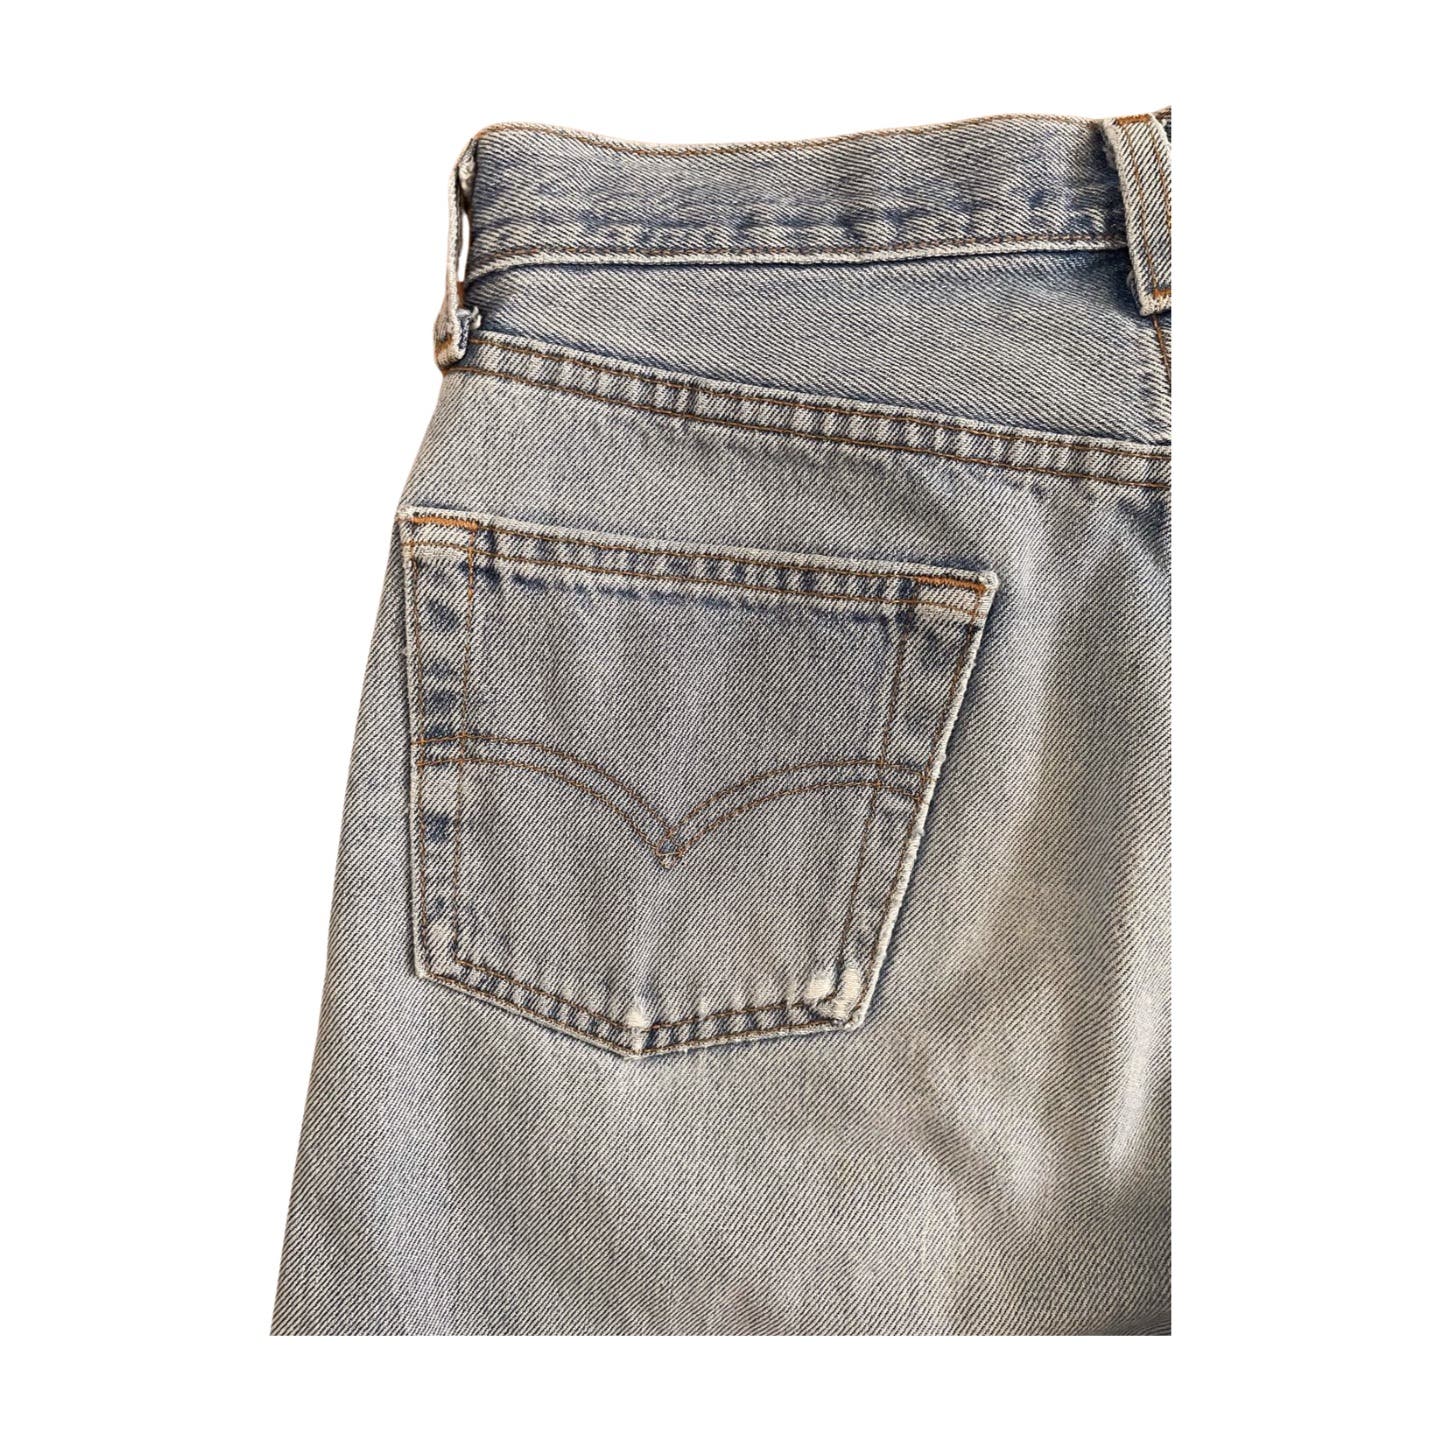 Vintage Levi’s 501 Jeans - Le Look